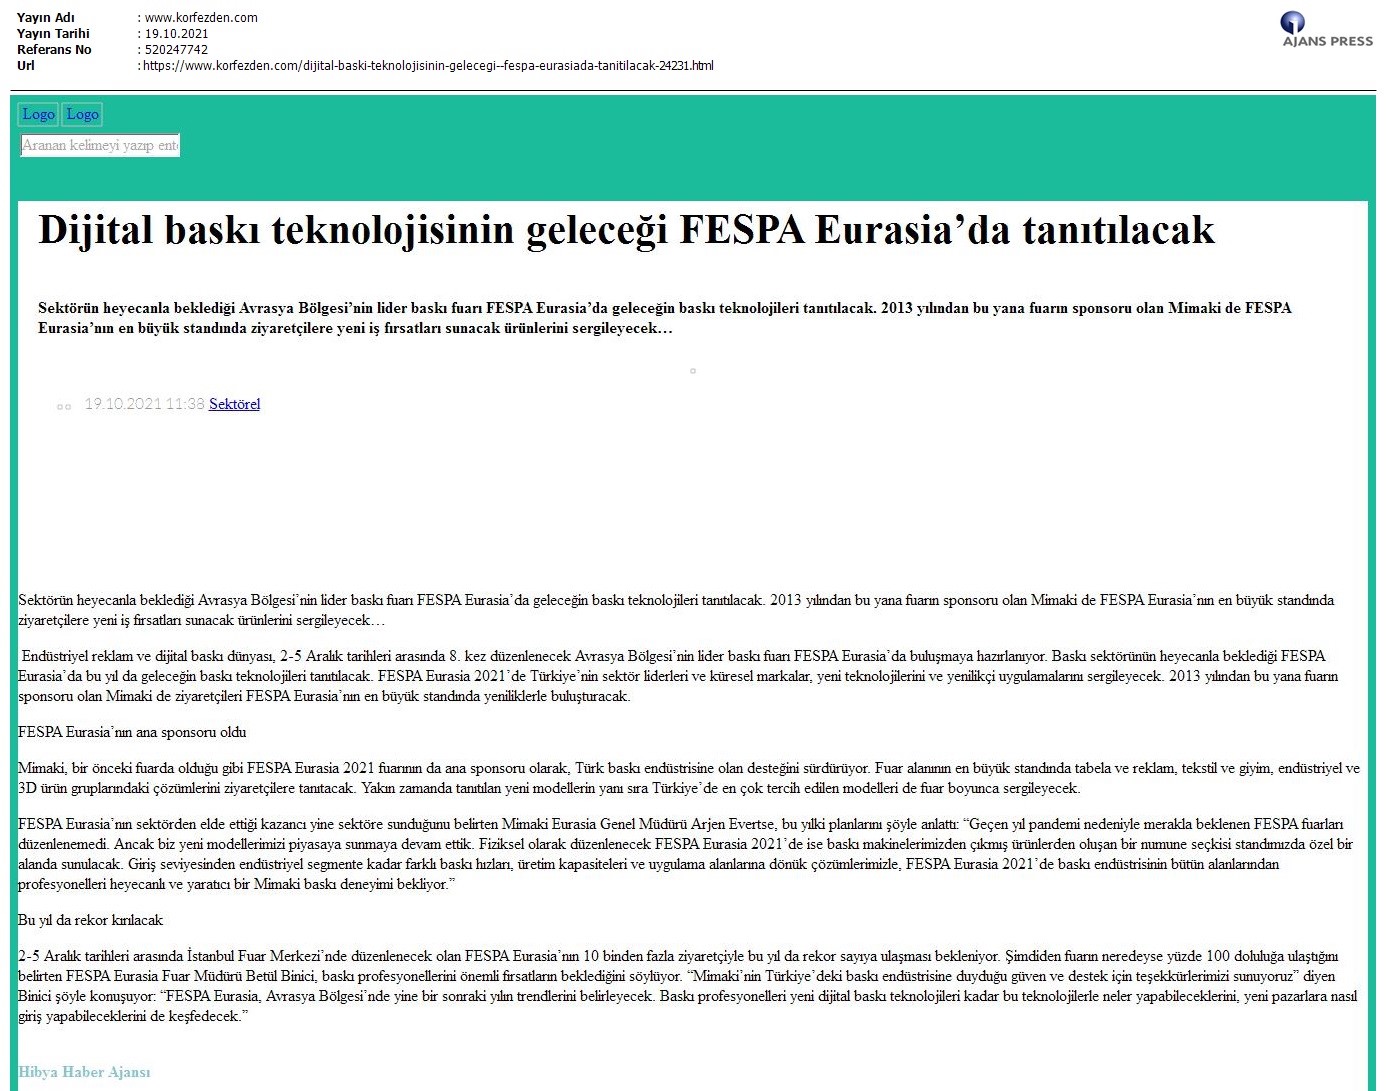 Dijital baskı teknolojisinin geleceği FESPA Eurasia'da tanıtılacak